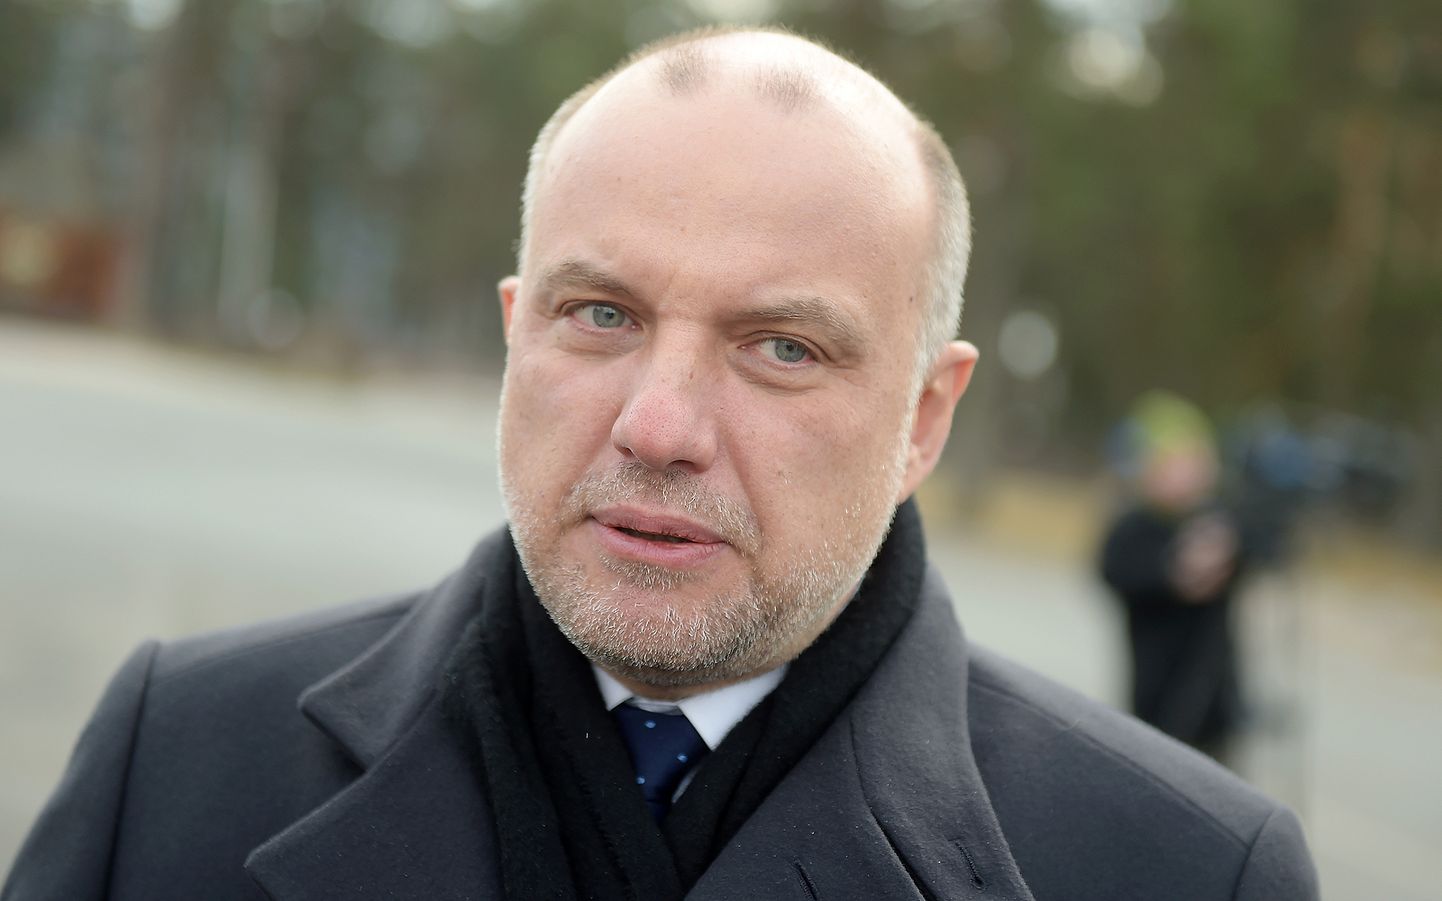 Igaunijas aizsardzības ministrs Jiri Luiks